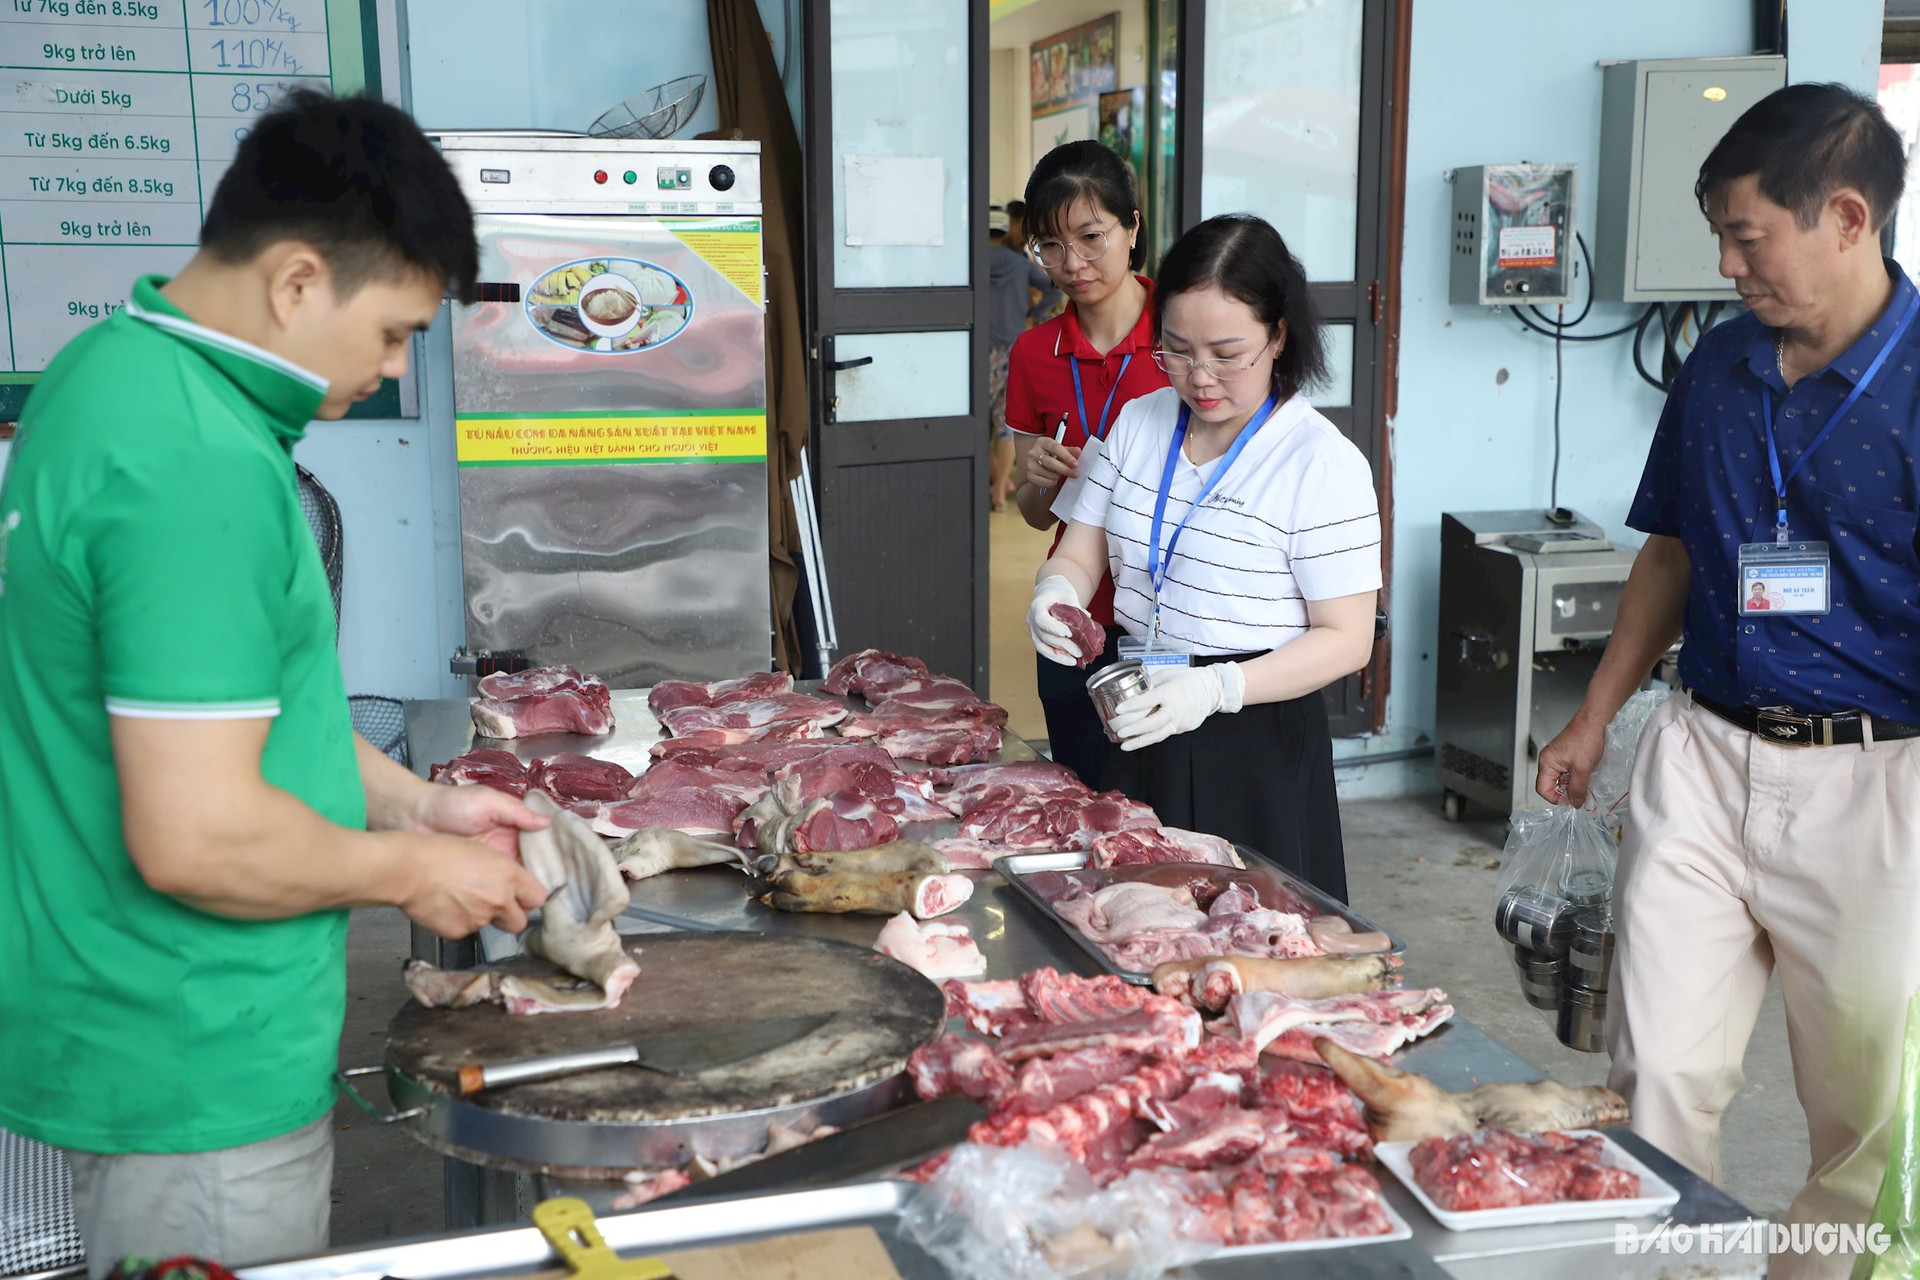 Đoàn lấy mẫu thịt lợn tại gian hàng bán thịt lợn của Hợp tác xã Liên kết chuỗi nông sản COCOFOOD ở phố Phạm Sư Mệnh (TP Hải Dương)